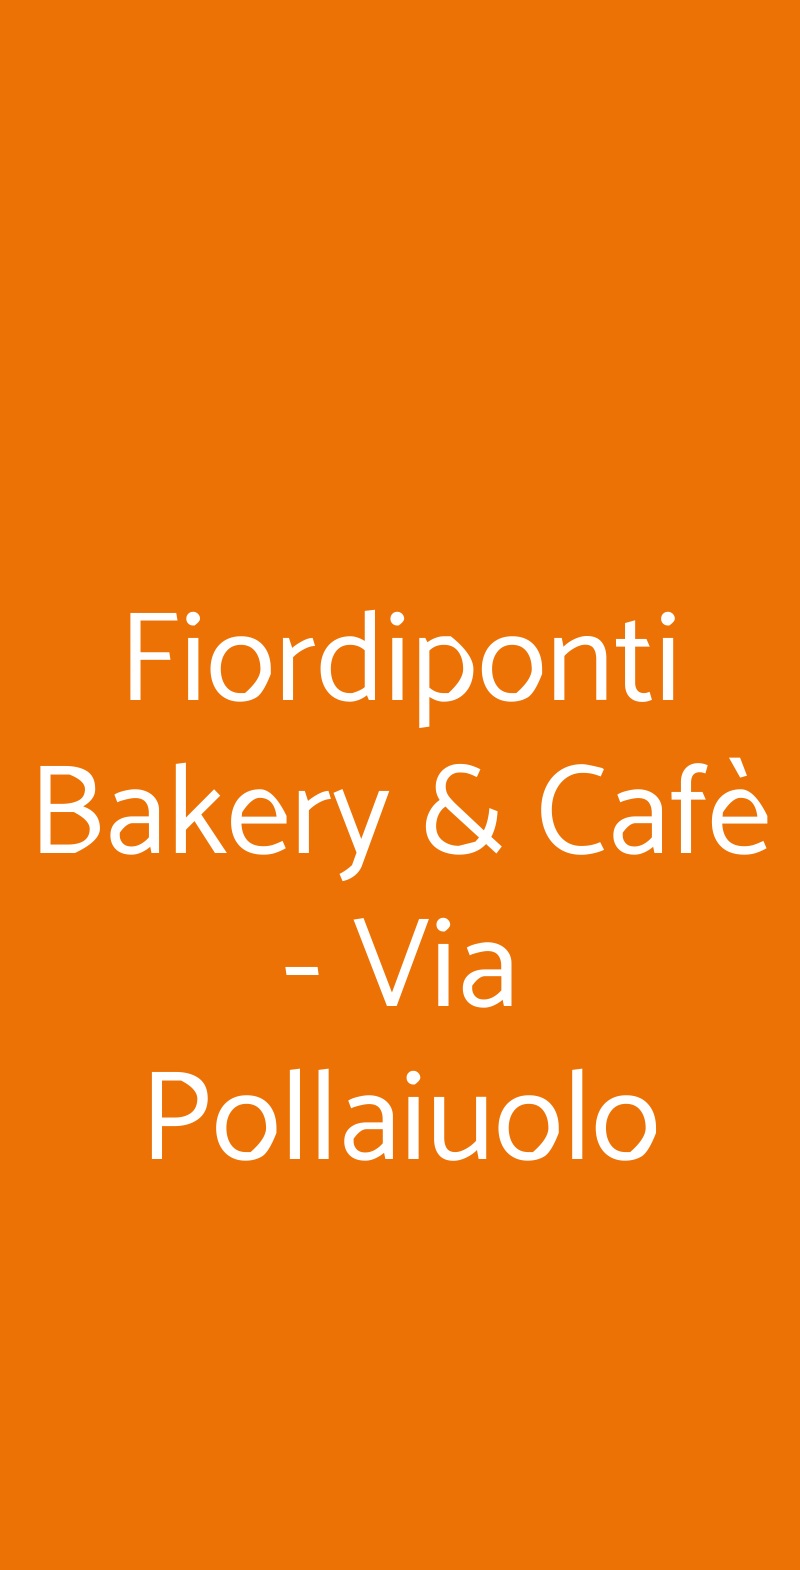 Fiordiponti Bakery & Cafè Milano menù 1 pagina